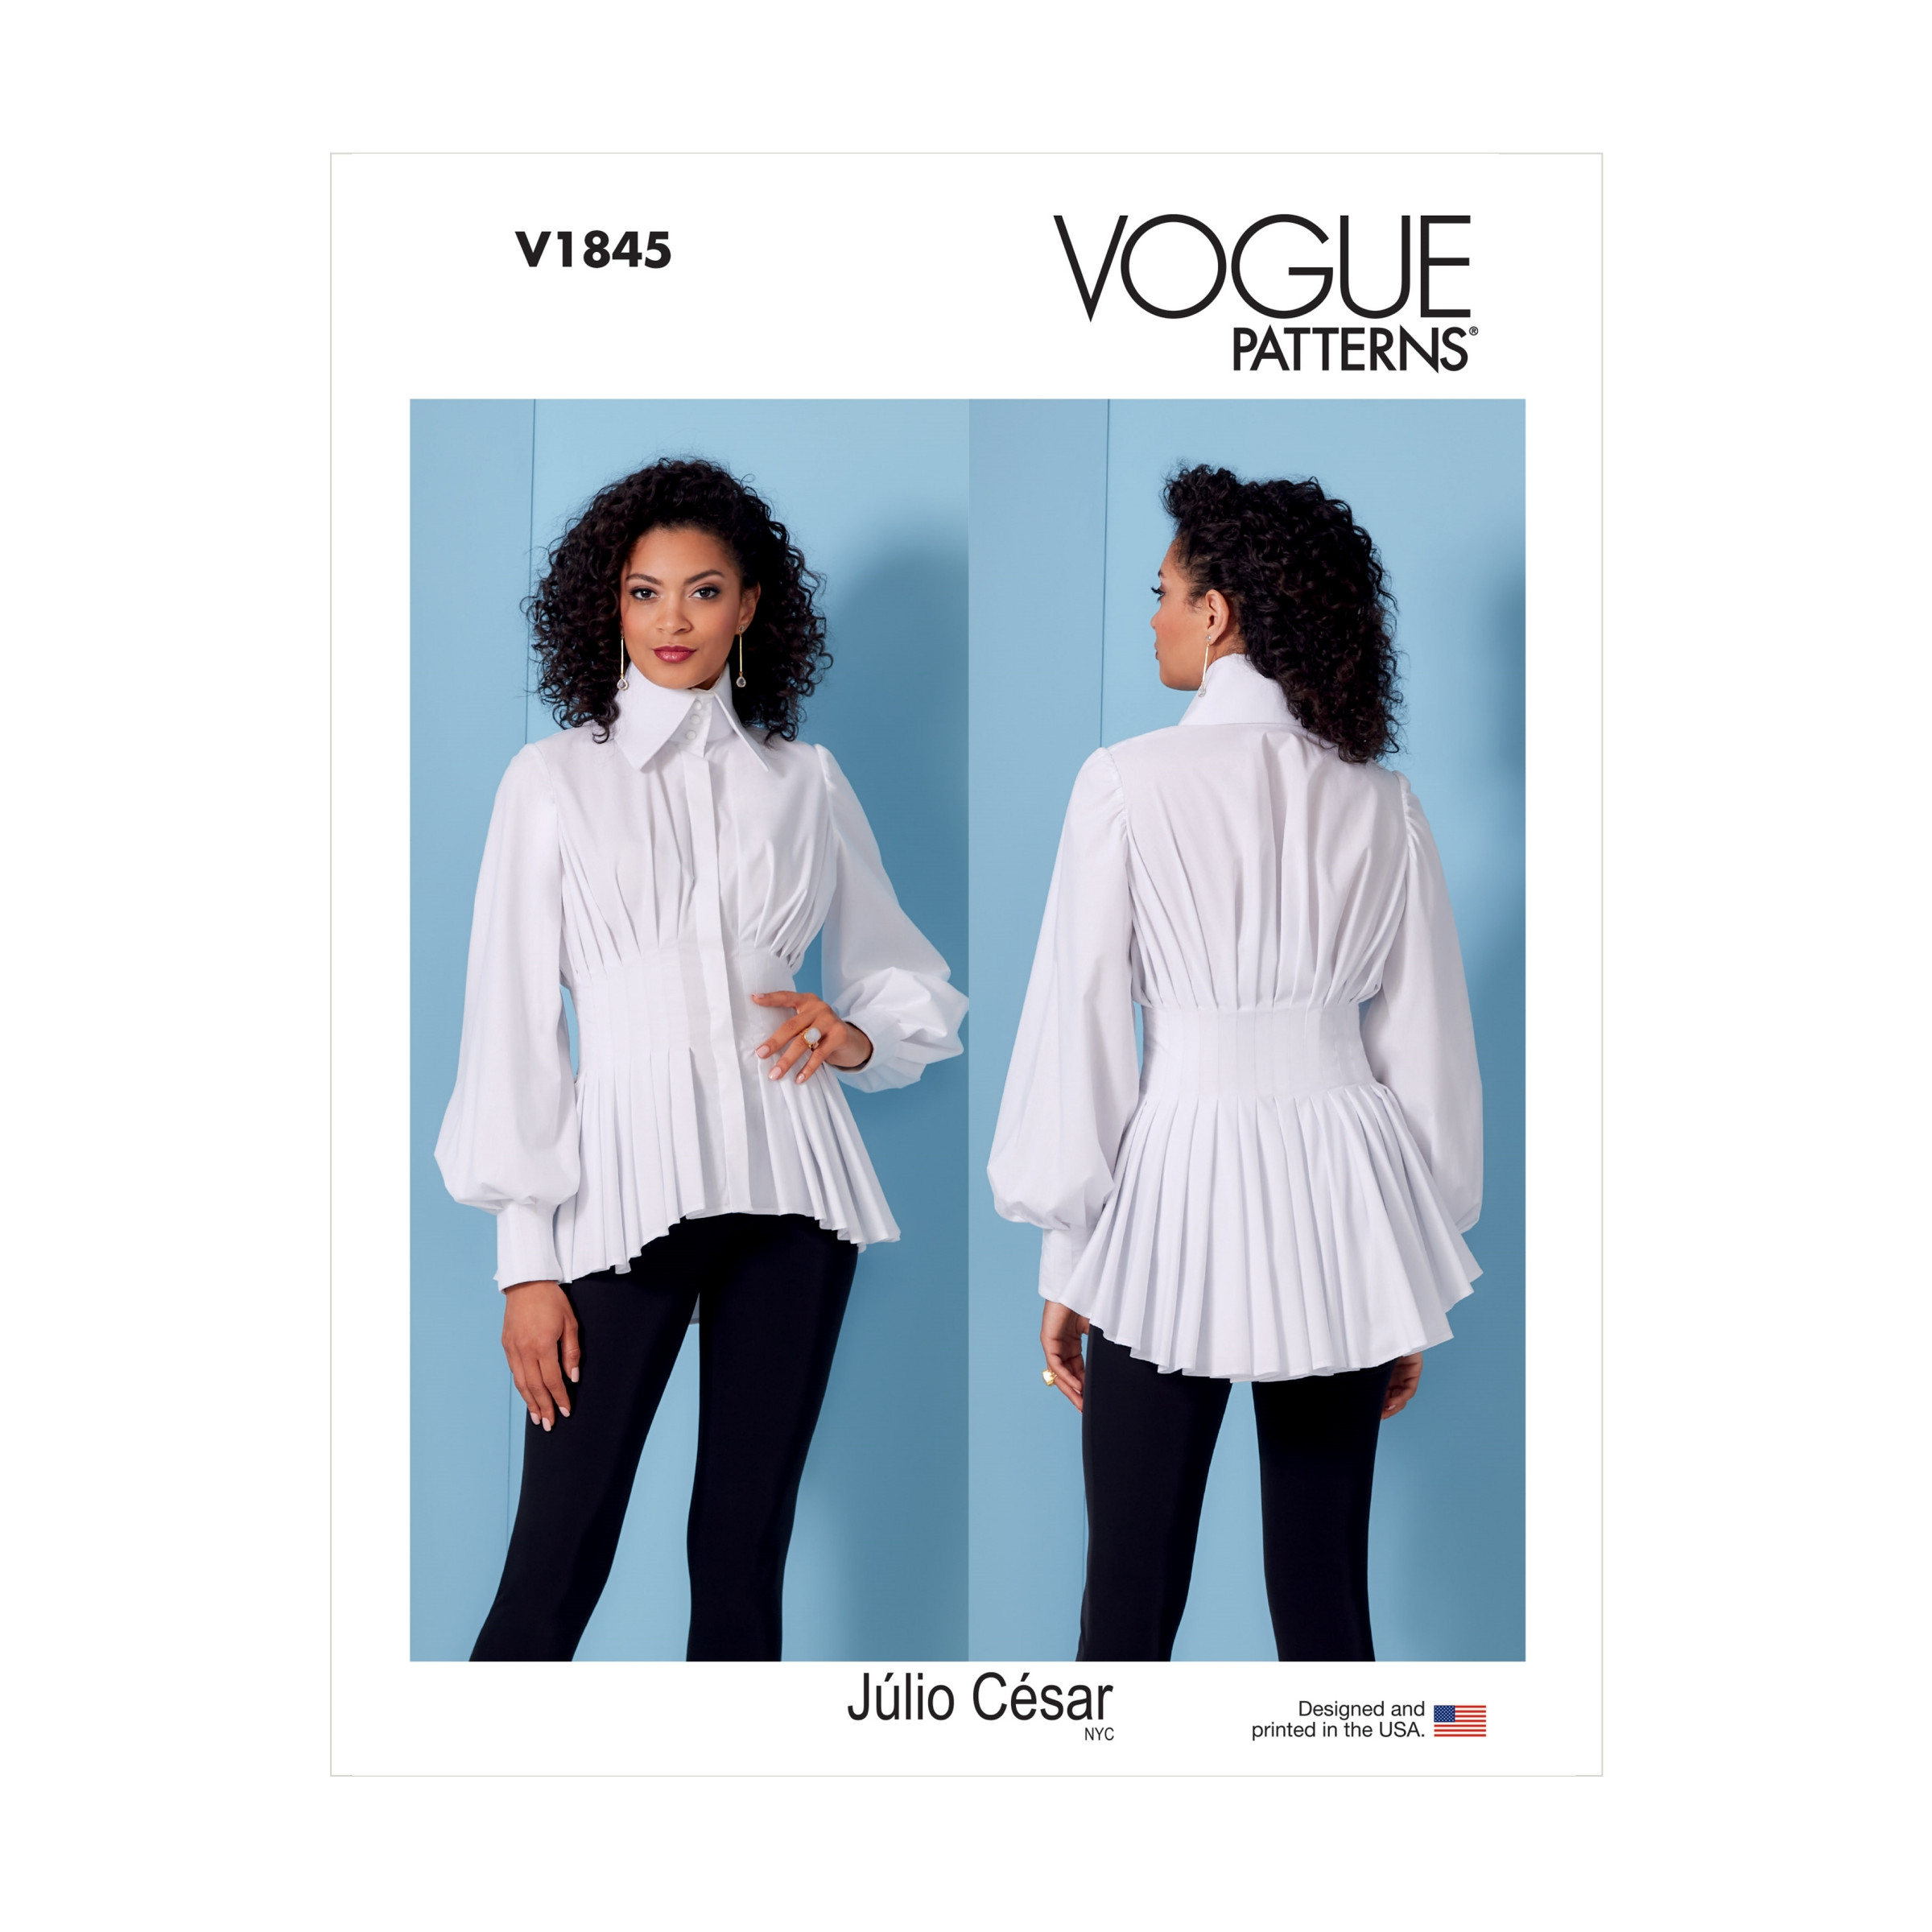 großer weiße Vogue – V1845 Bluse Knopfleiste – mega – Schnittmuster Stehkragen – geriehen – verdeckte Blitz-Idee24